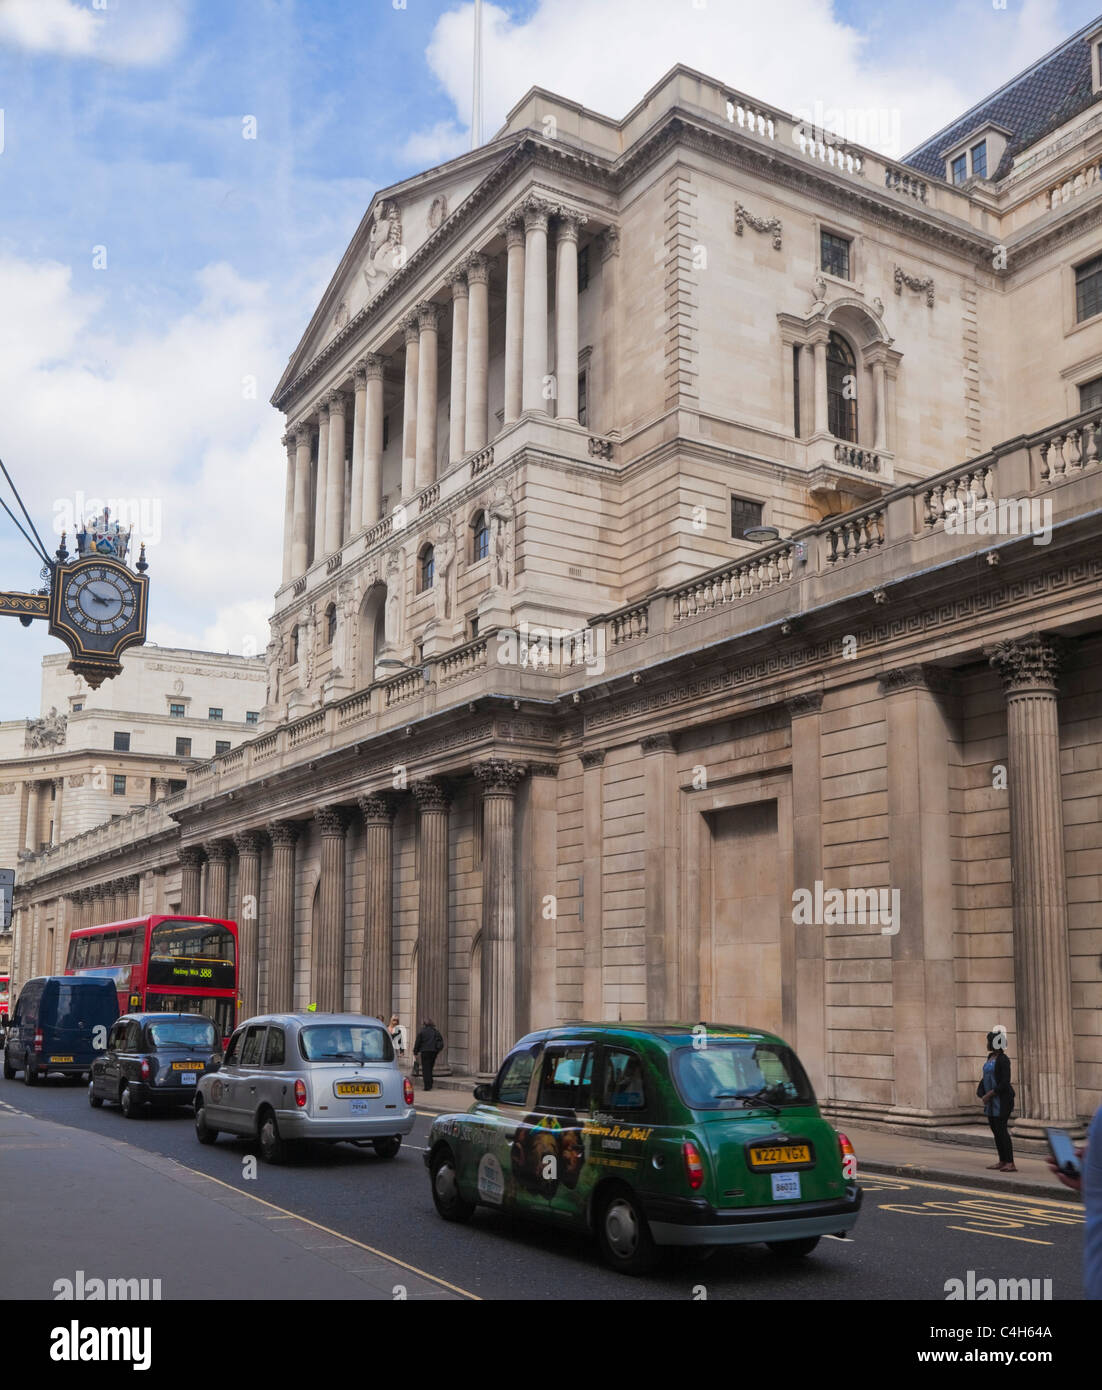 Banque d'Angleterre dans la ville de Londres Banque D'Images